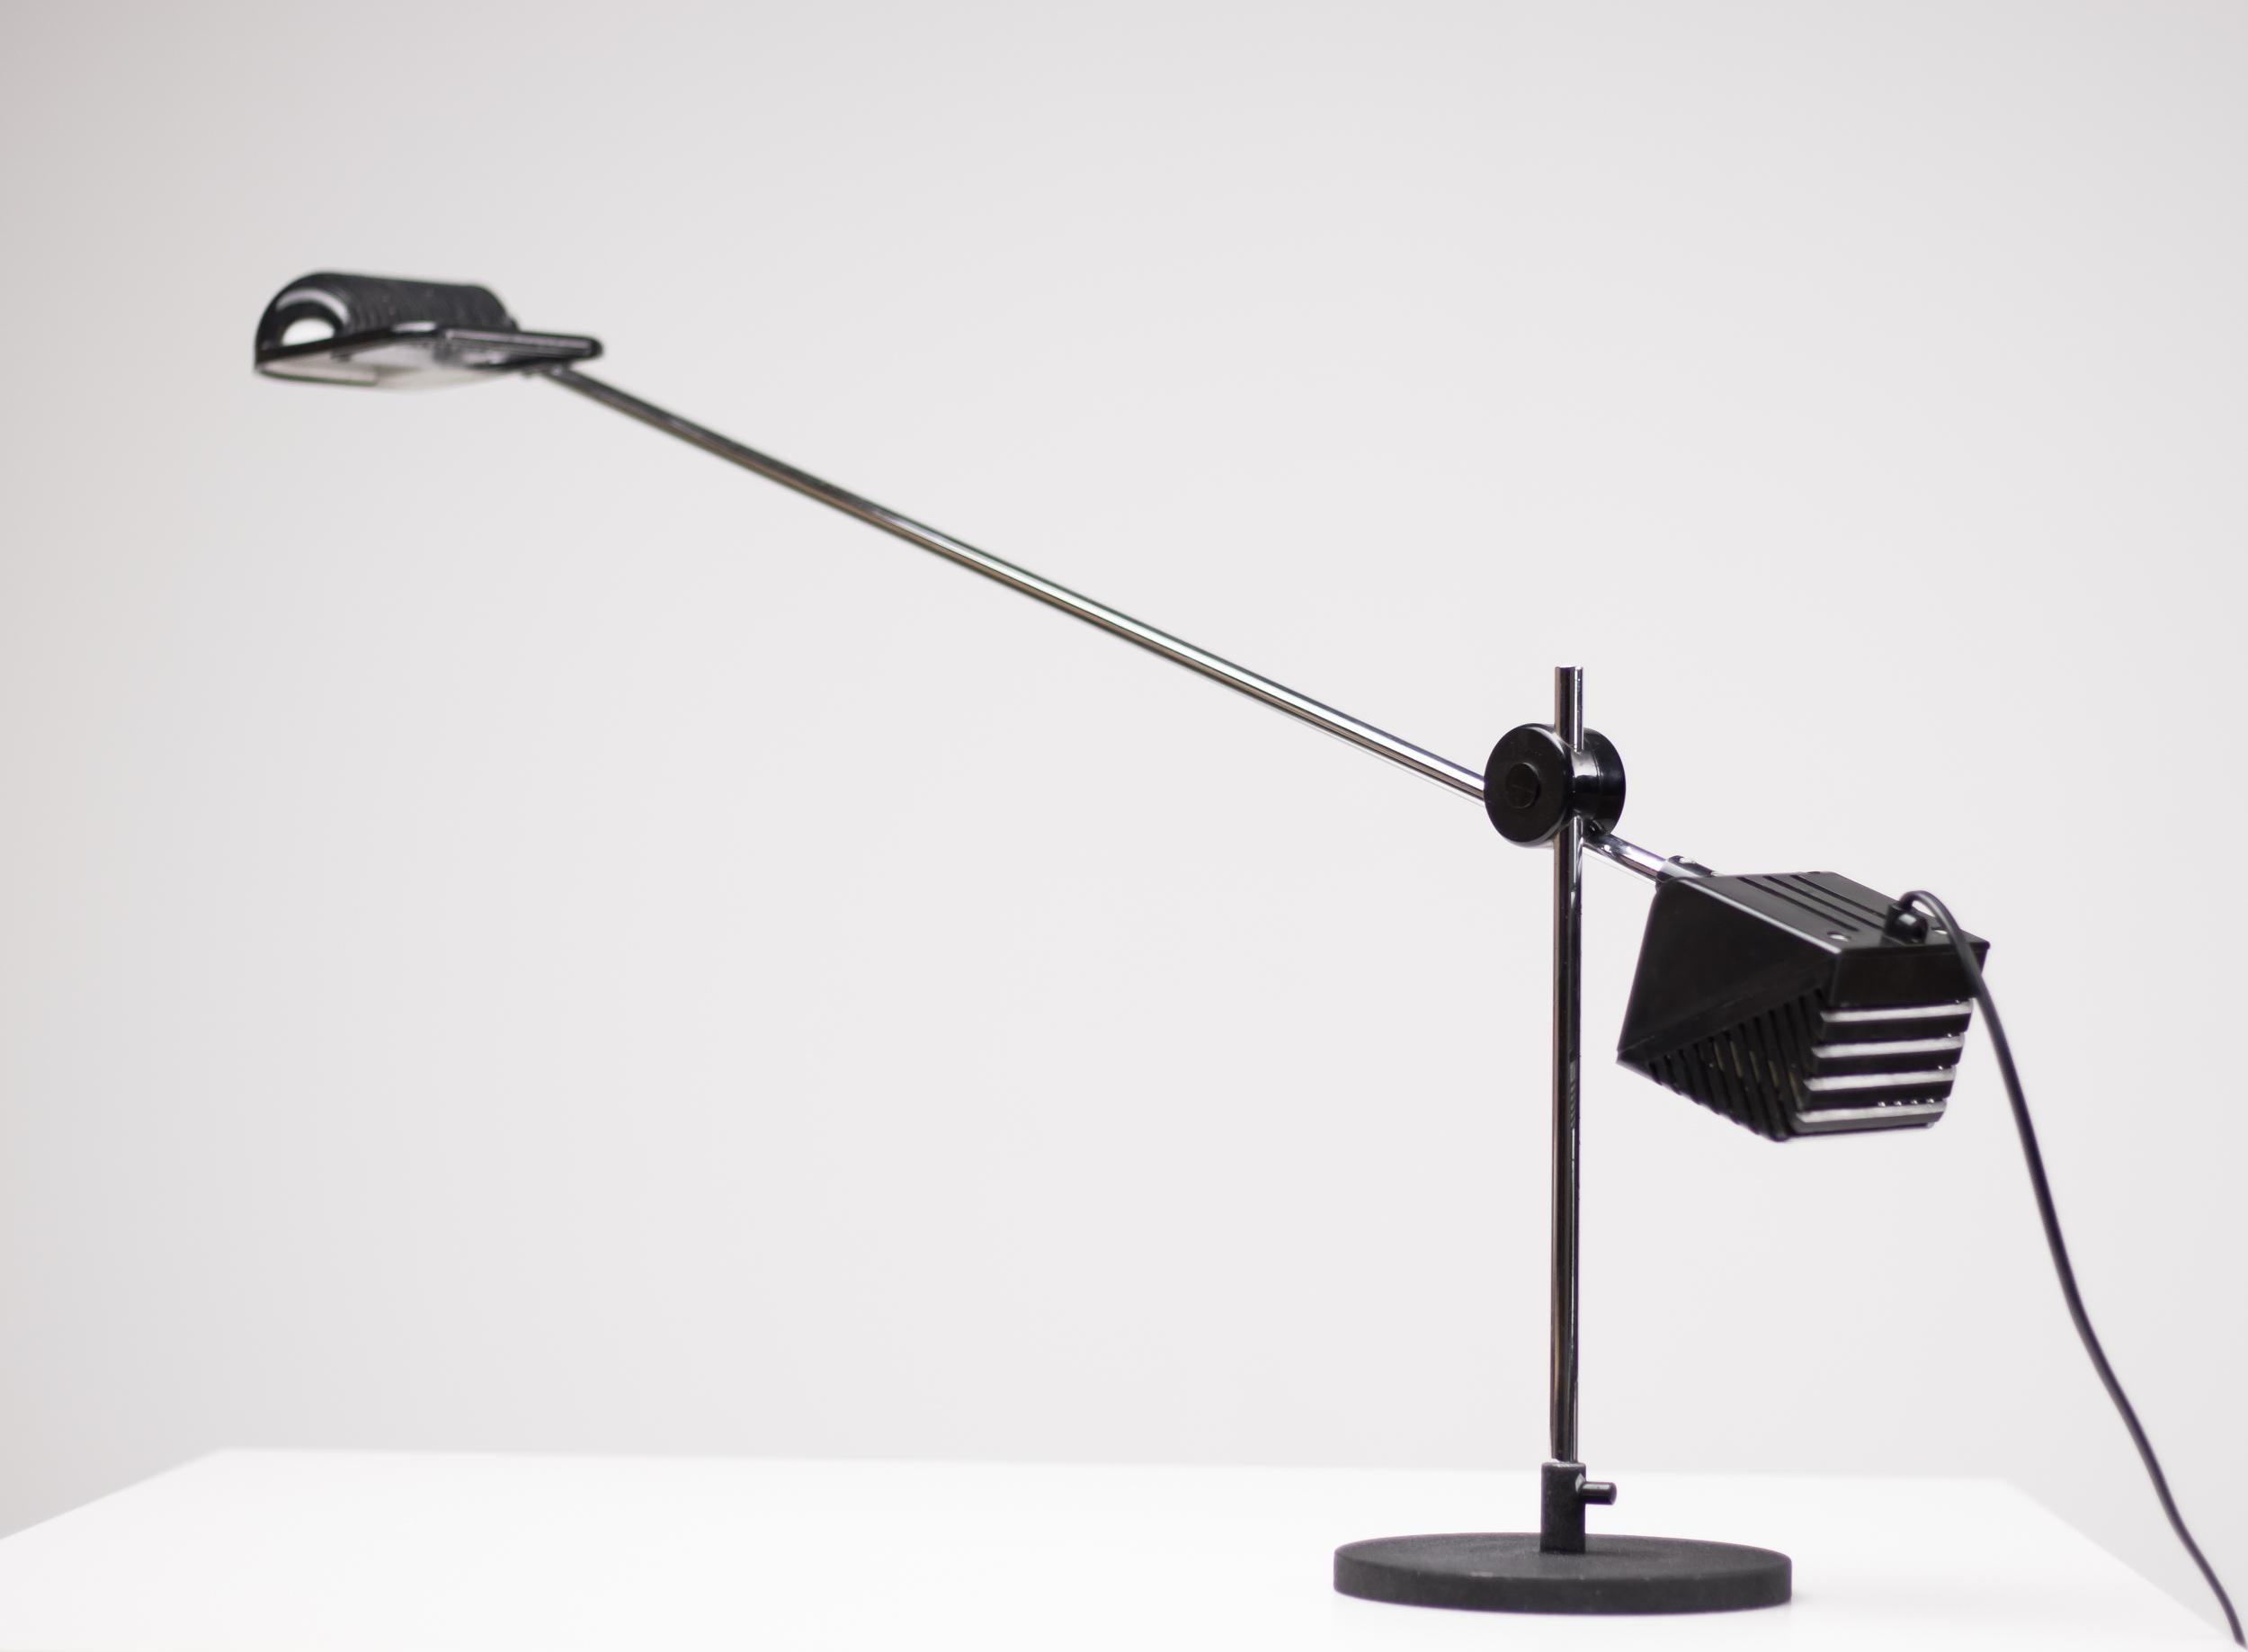 Maniglia table lamp designed by De Pas, Lomazzi and D'Urbino for Stilnovo.
Marked.